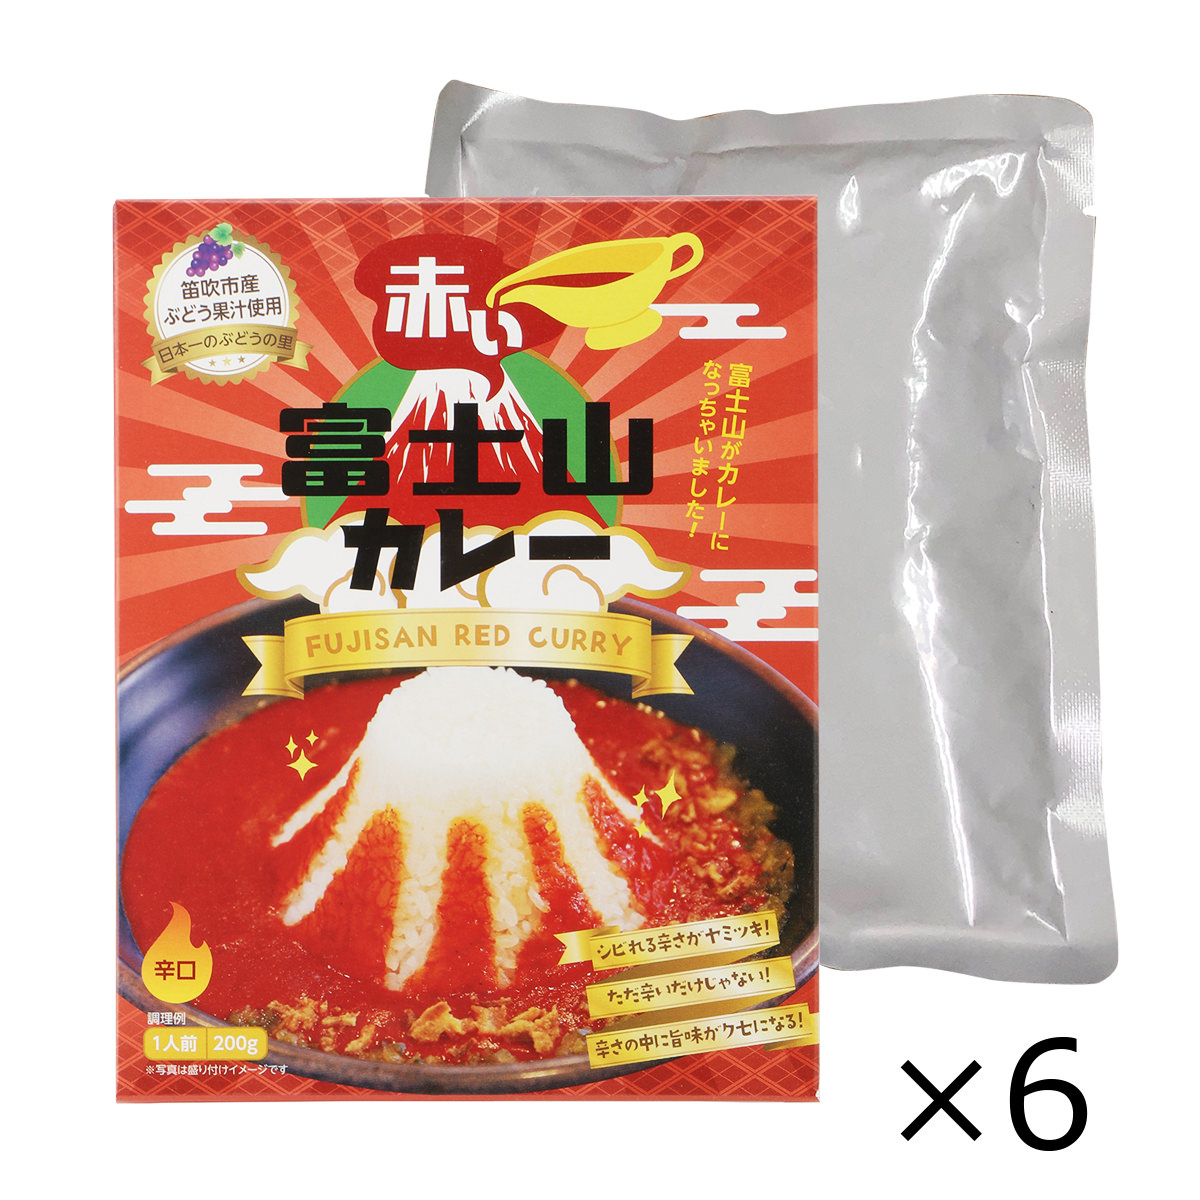 T02160038　6食セット(6個入り)　赤い富士山カレー　【送料無料】